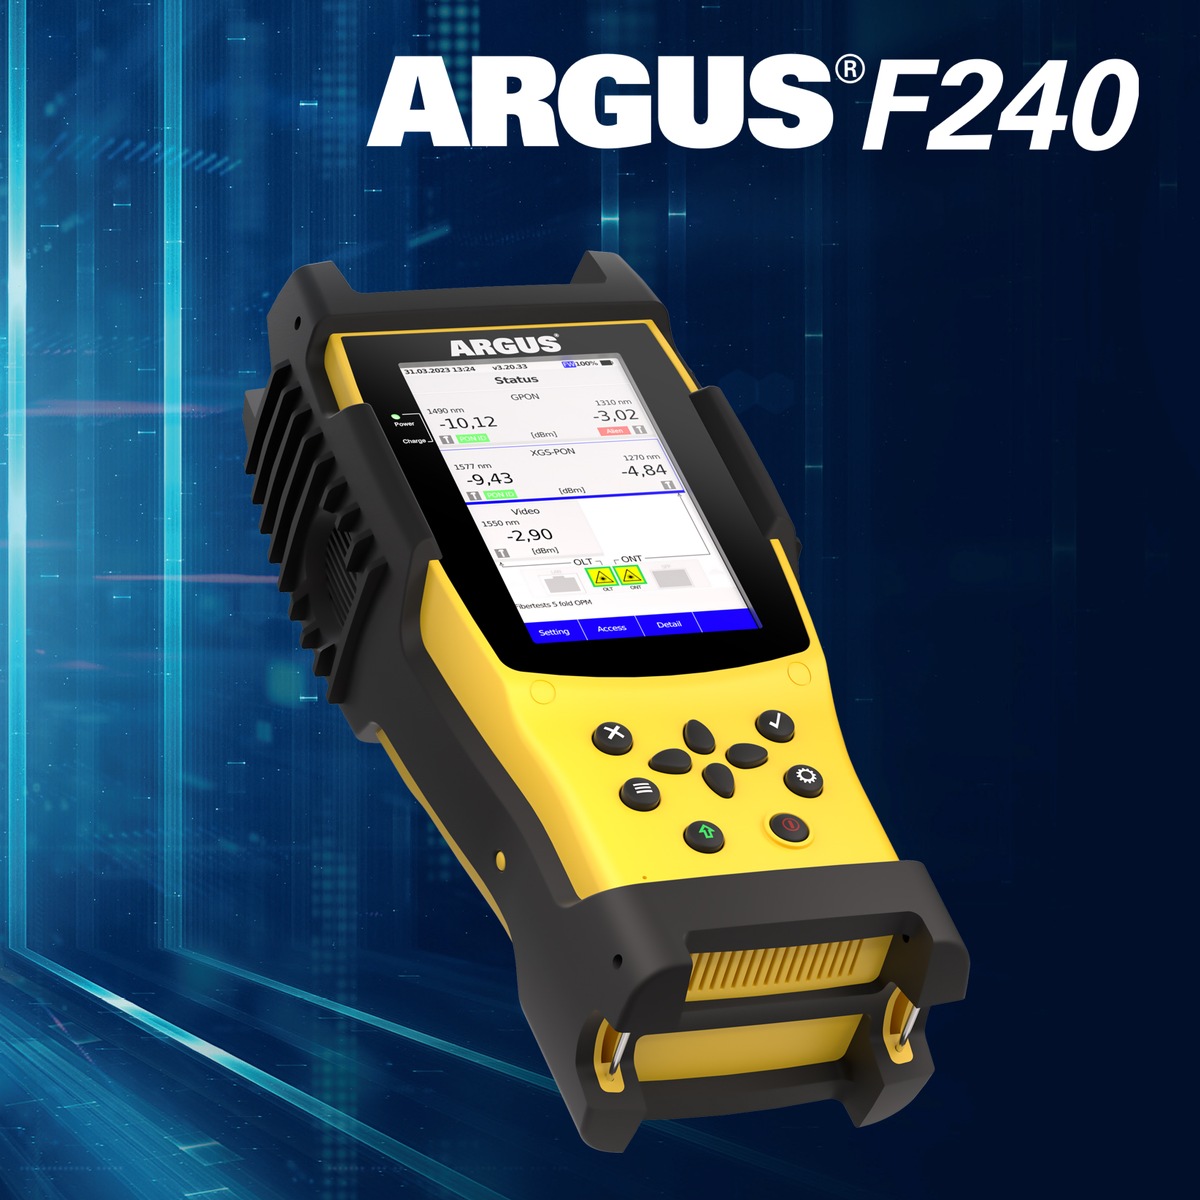 intec présente le testeur de fibre optique ARGUS® F240 à l'ANGA COM